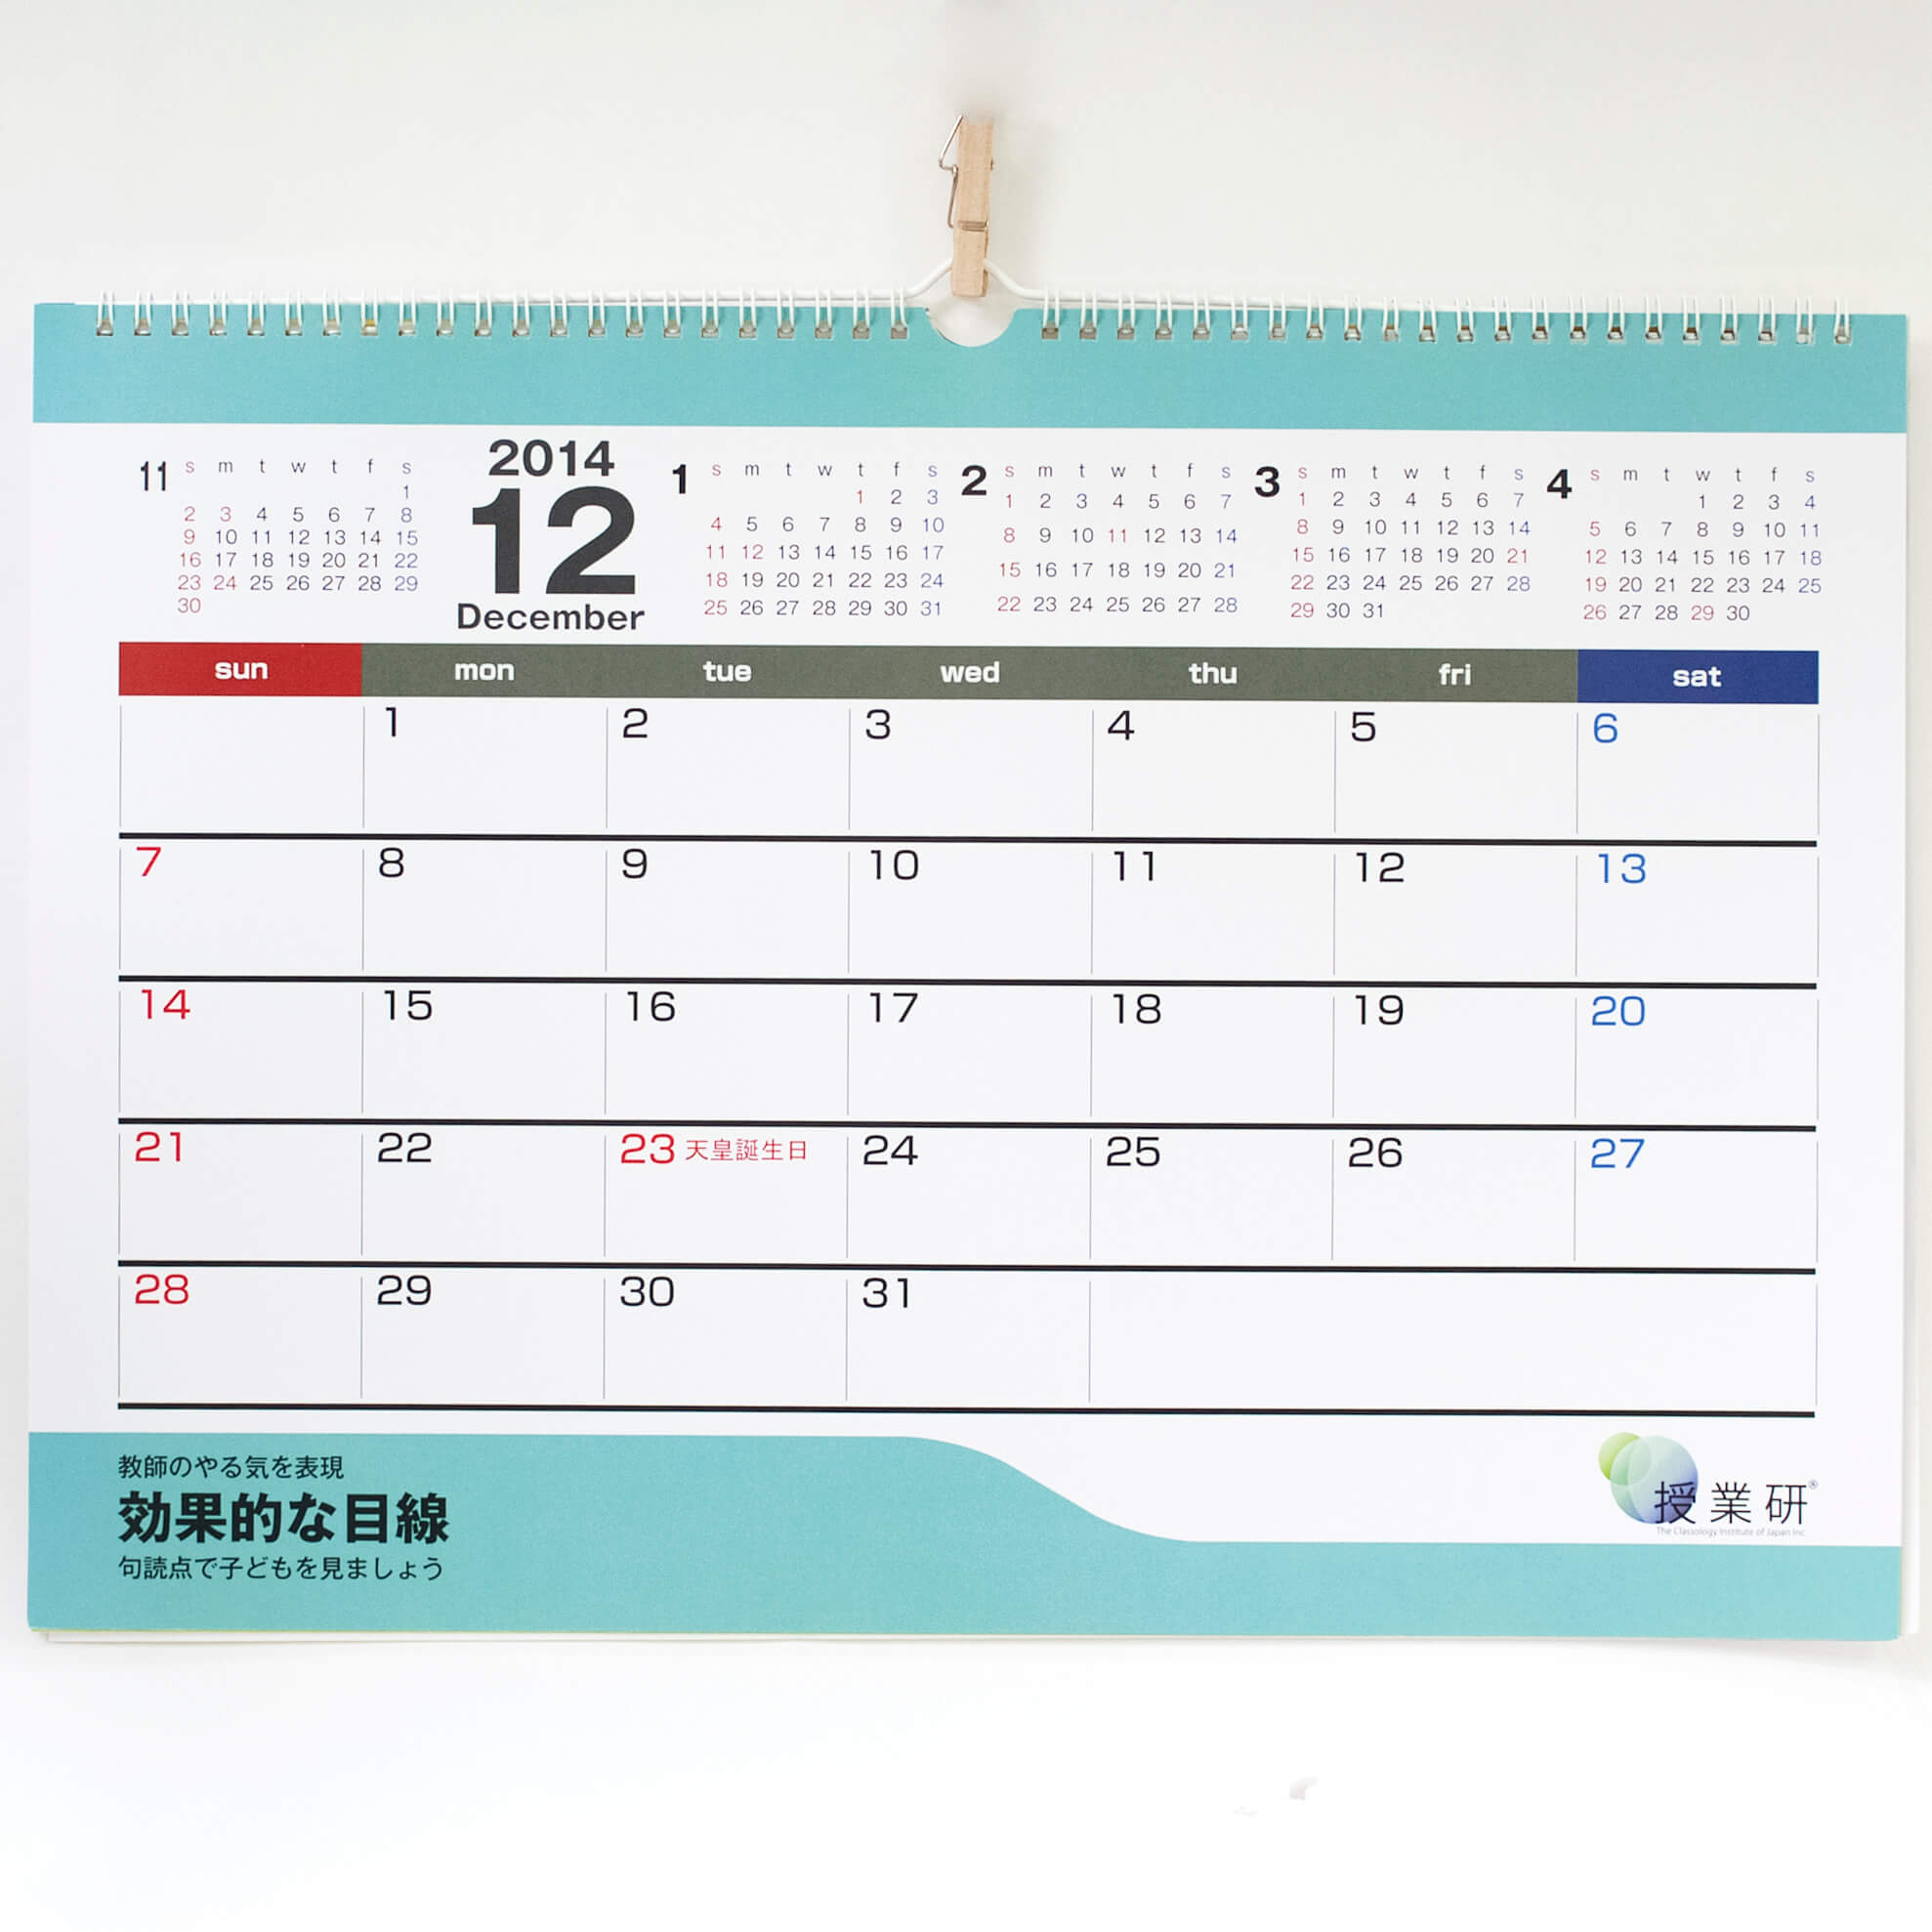 「株式会社授業学研究所 様」製作のオリジナルカレンダー ギャラリー写真1